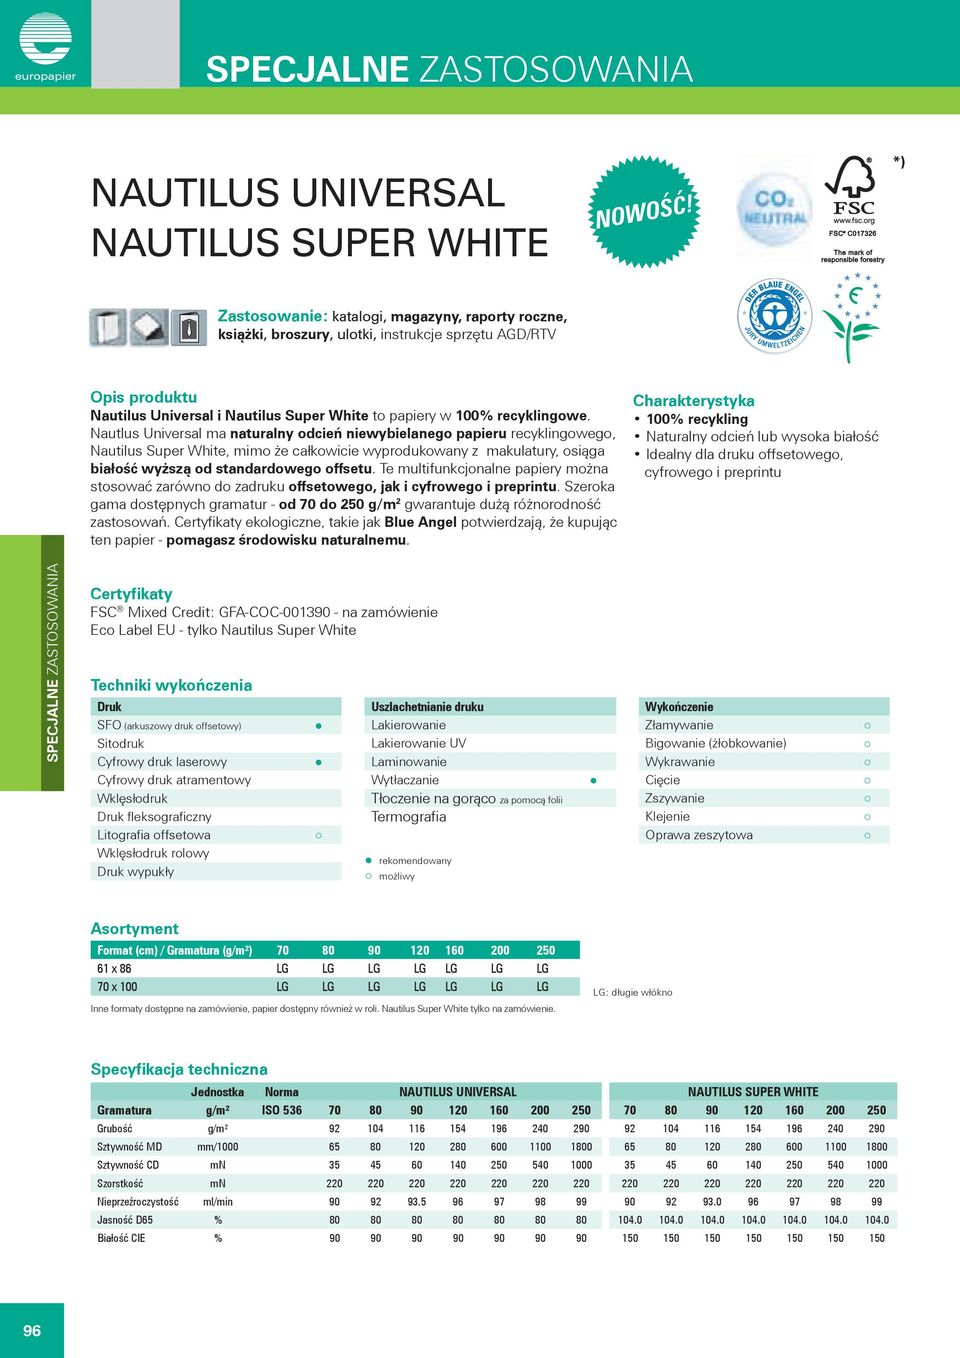 Nautlus Universal ma naturalny odcień niewybielanego papieru recyklingowego, Nautilus Super White, mimo że całkowicie wyprodukowany z makulatury, osiąga białość wyższą od standardowego offsetu.